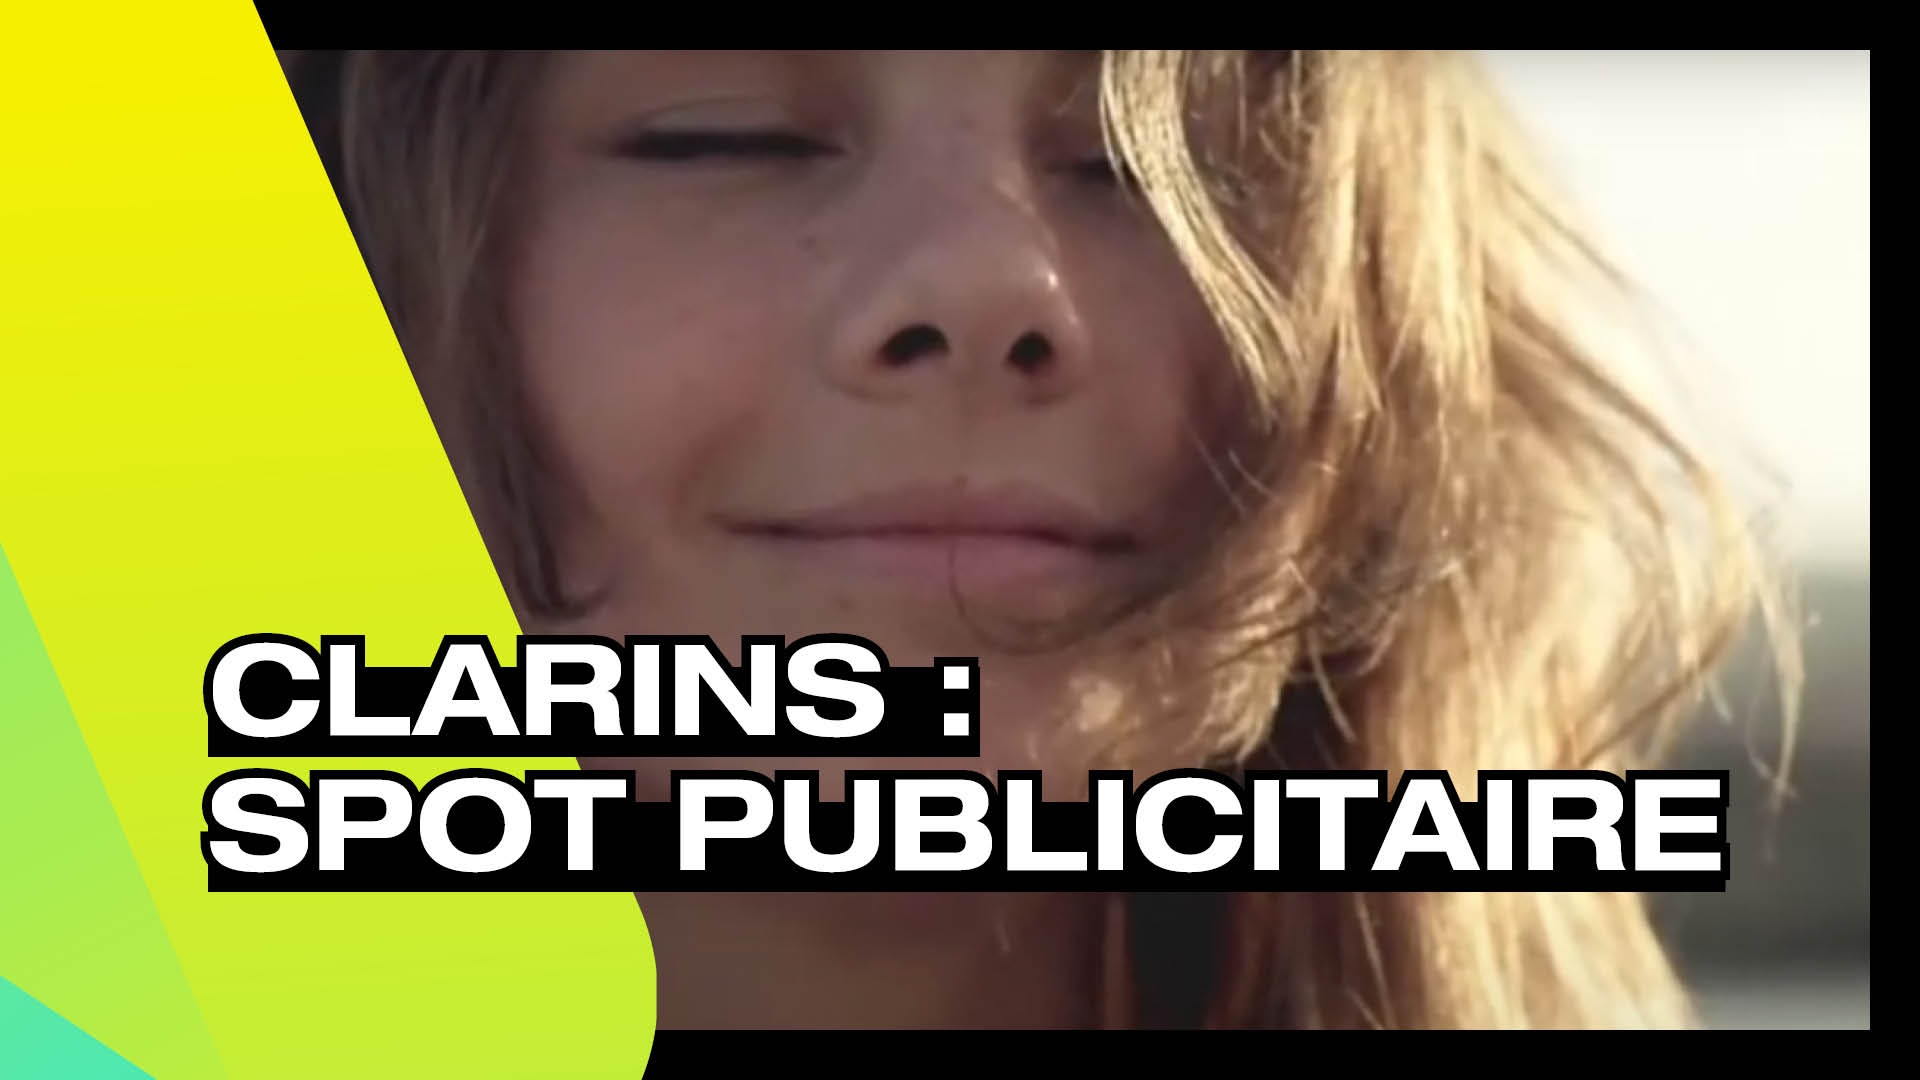 CLARINS - Spot publicitaire